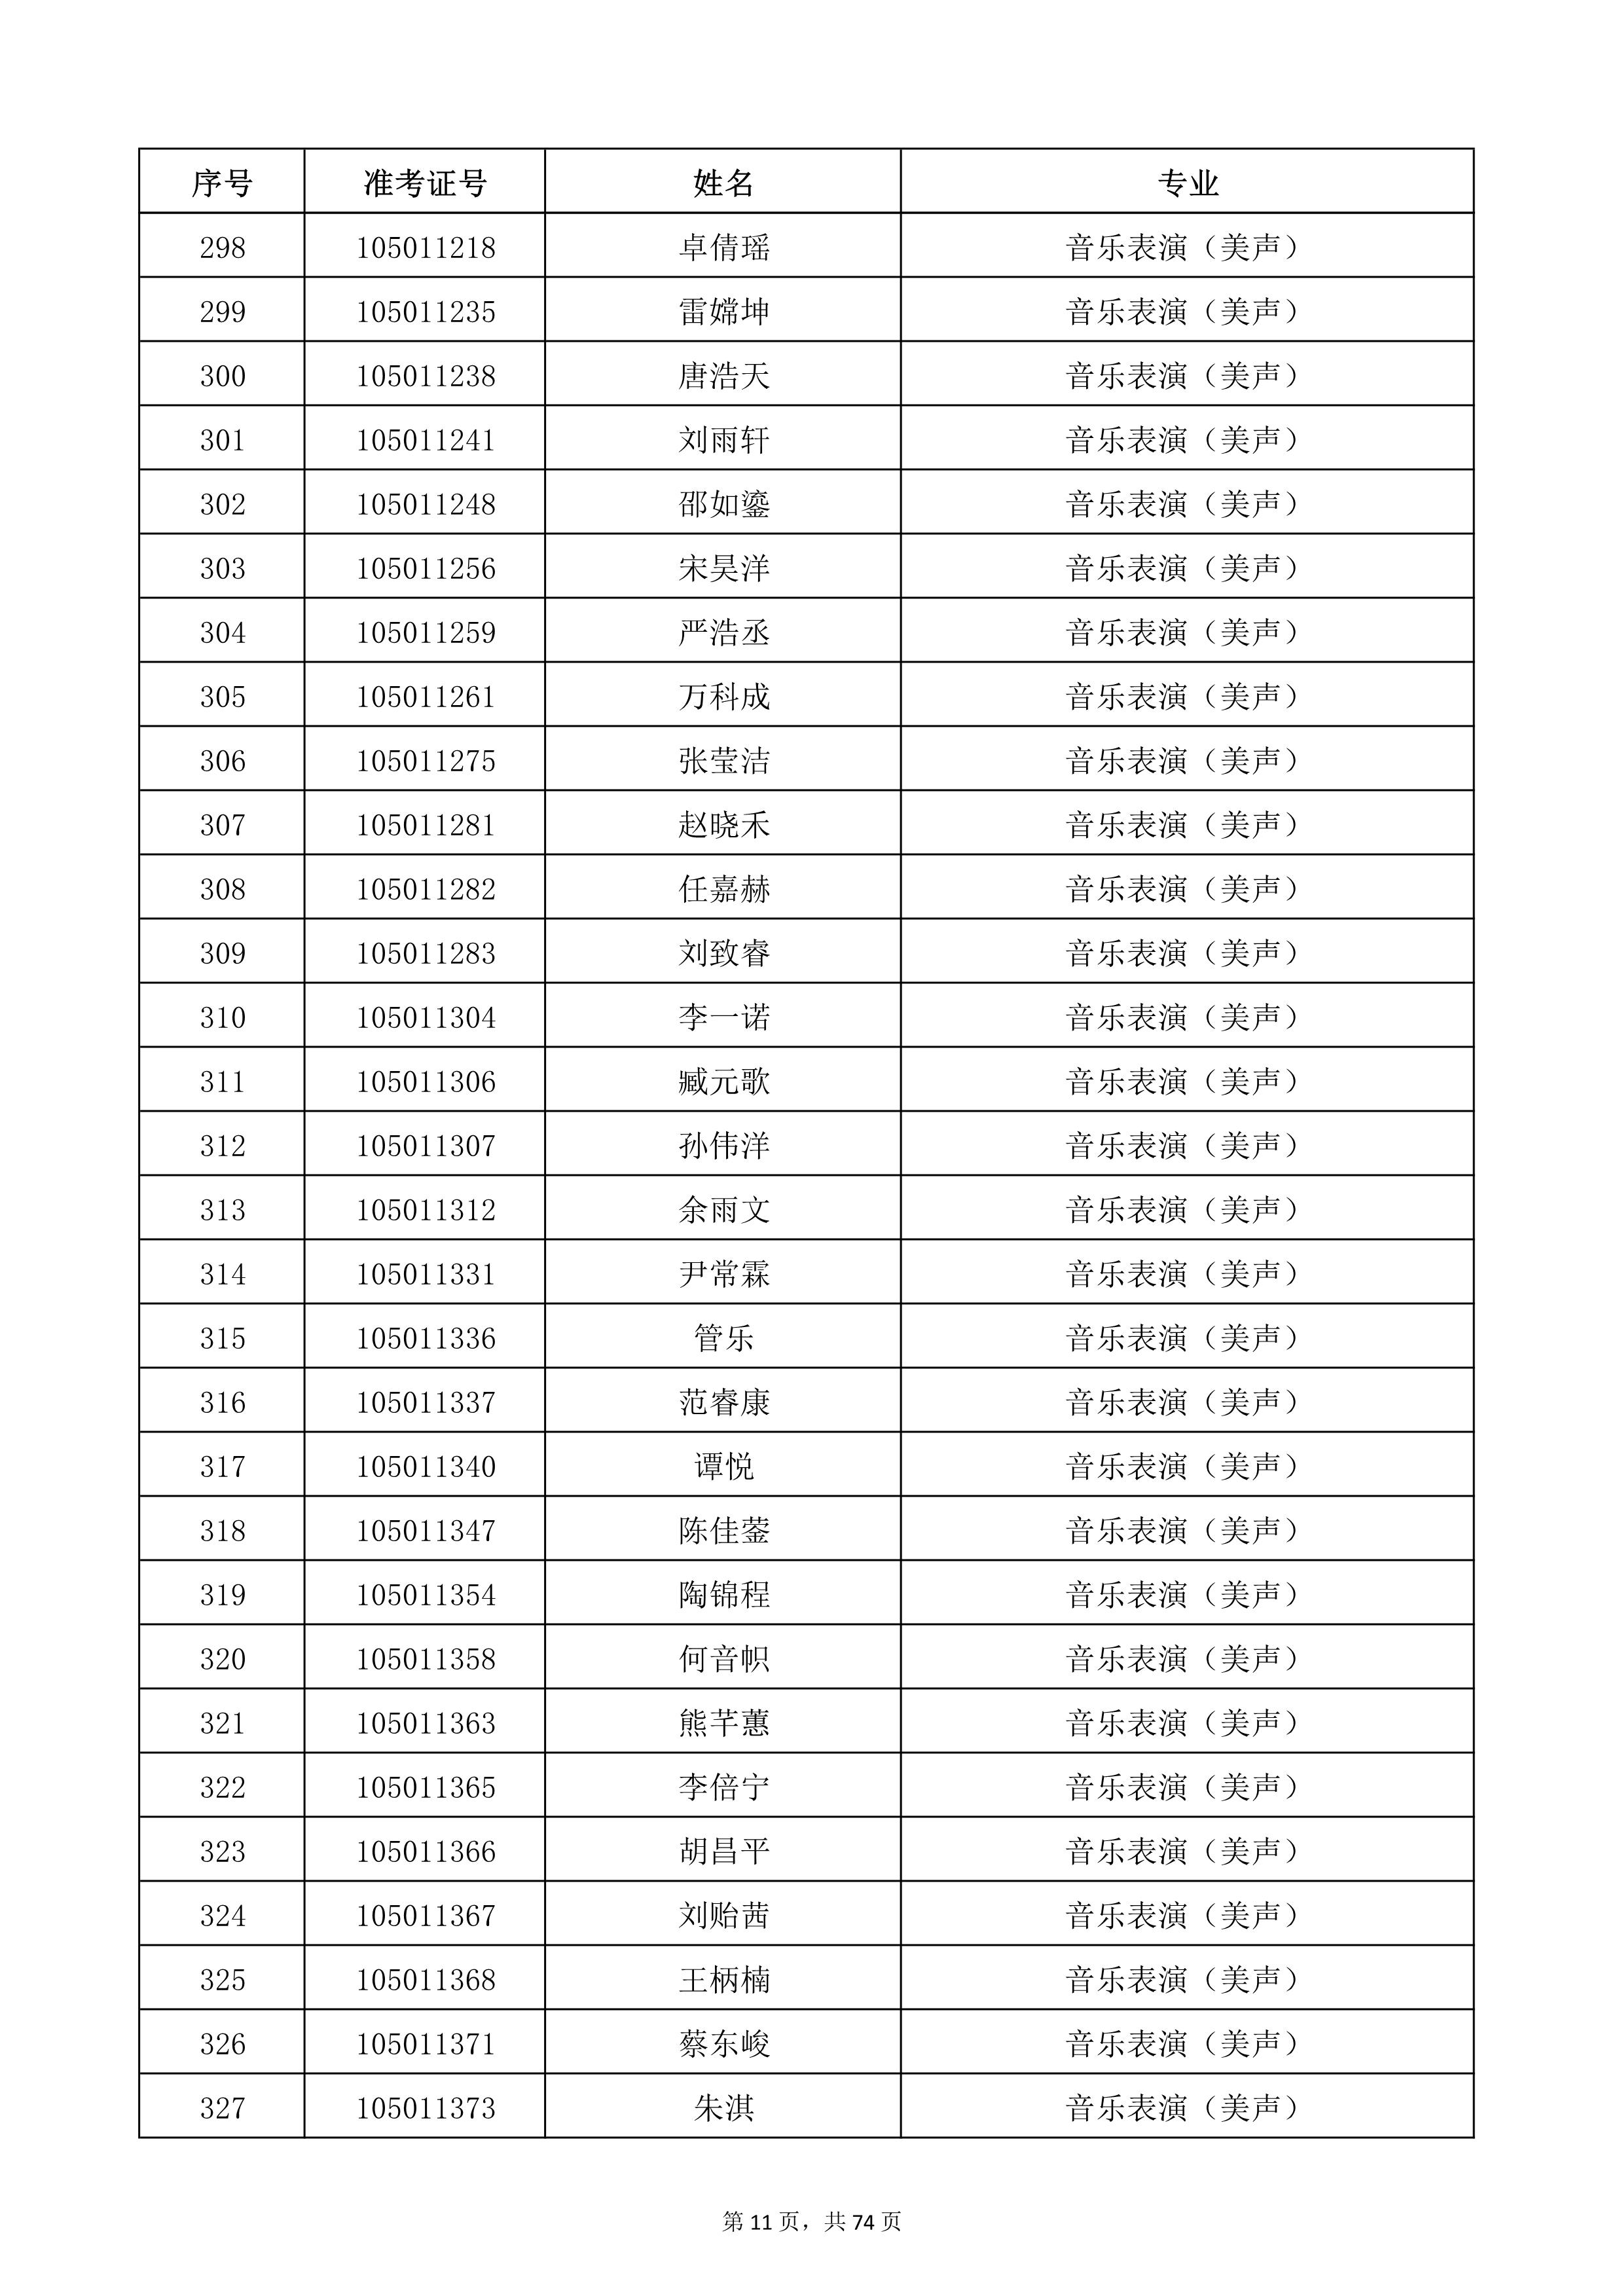 天津音乐学院2022年本科招生考试复试名单_11.jpg